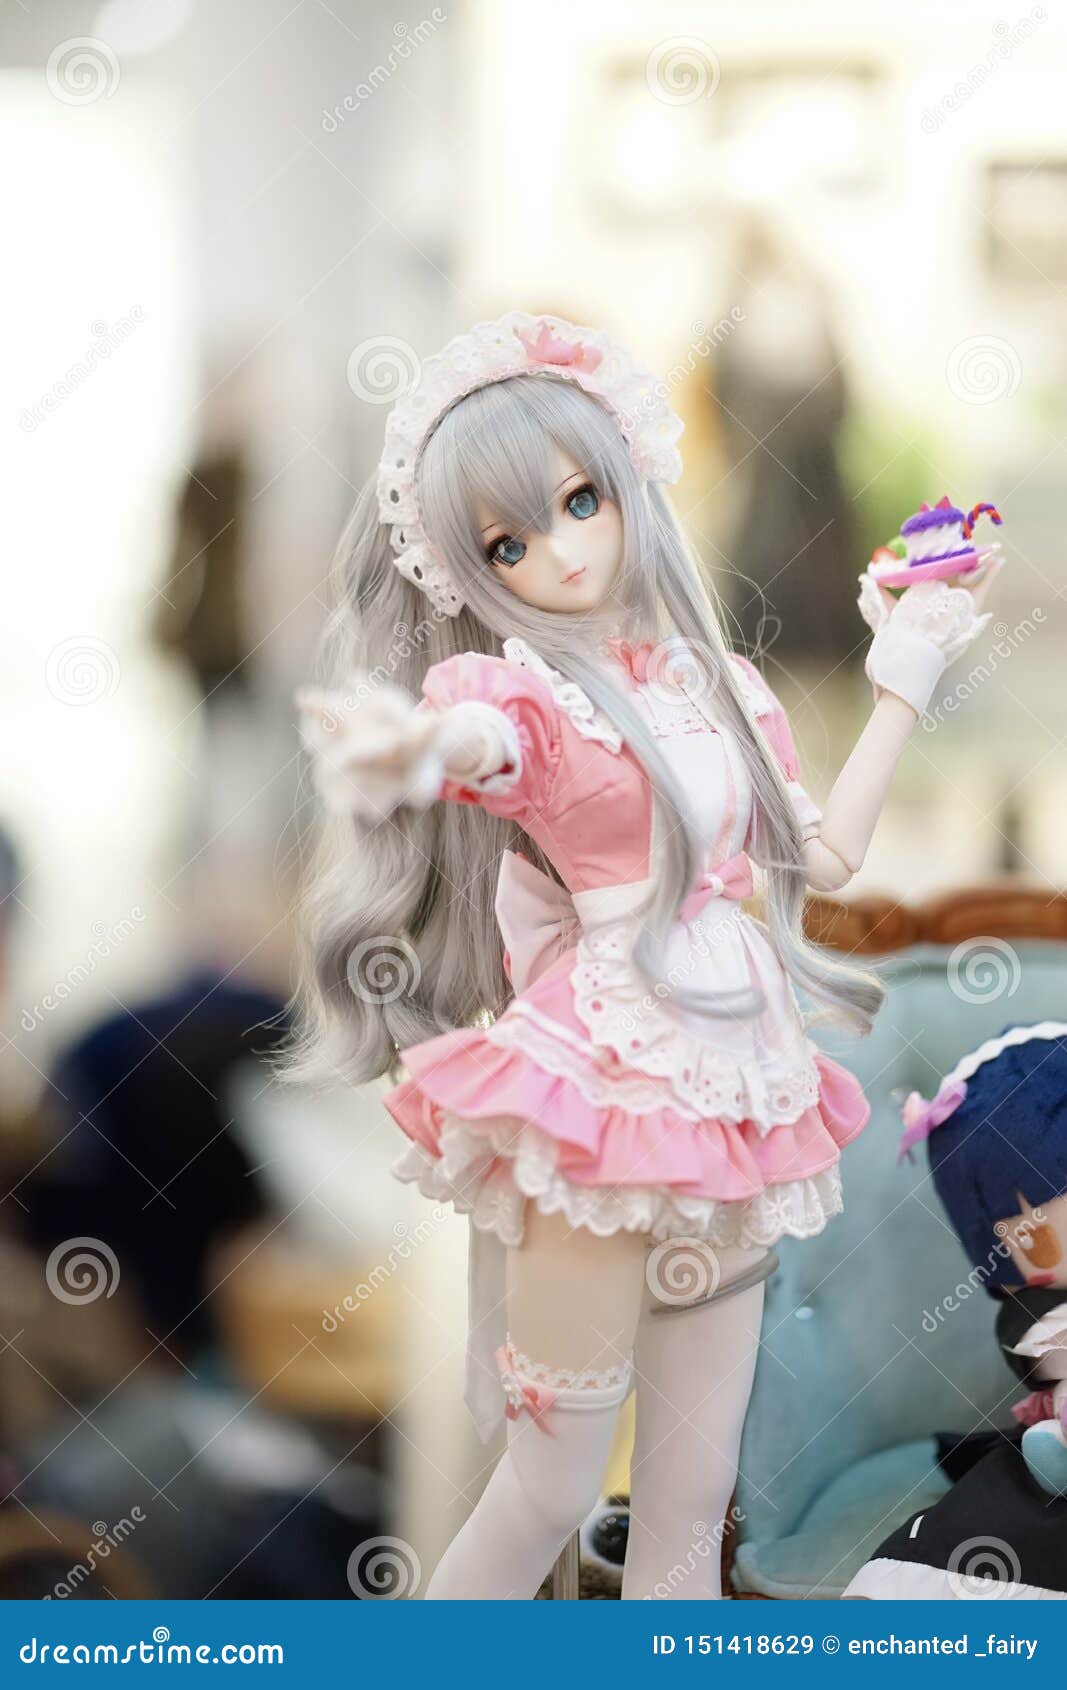 Cute Doll / Kawaii Anime Doll